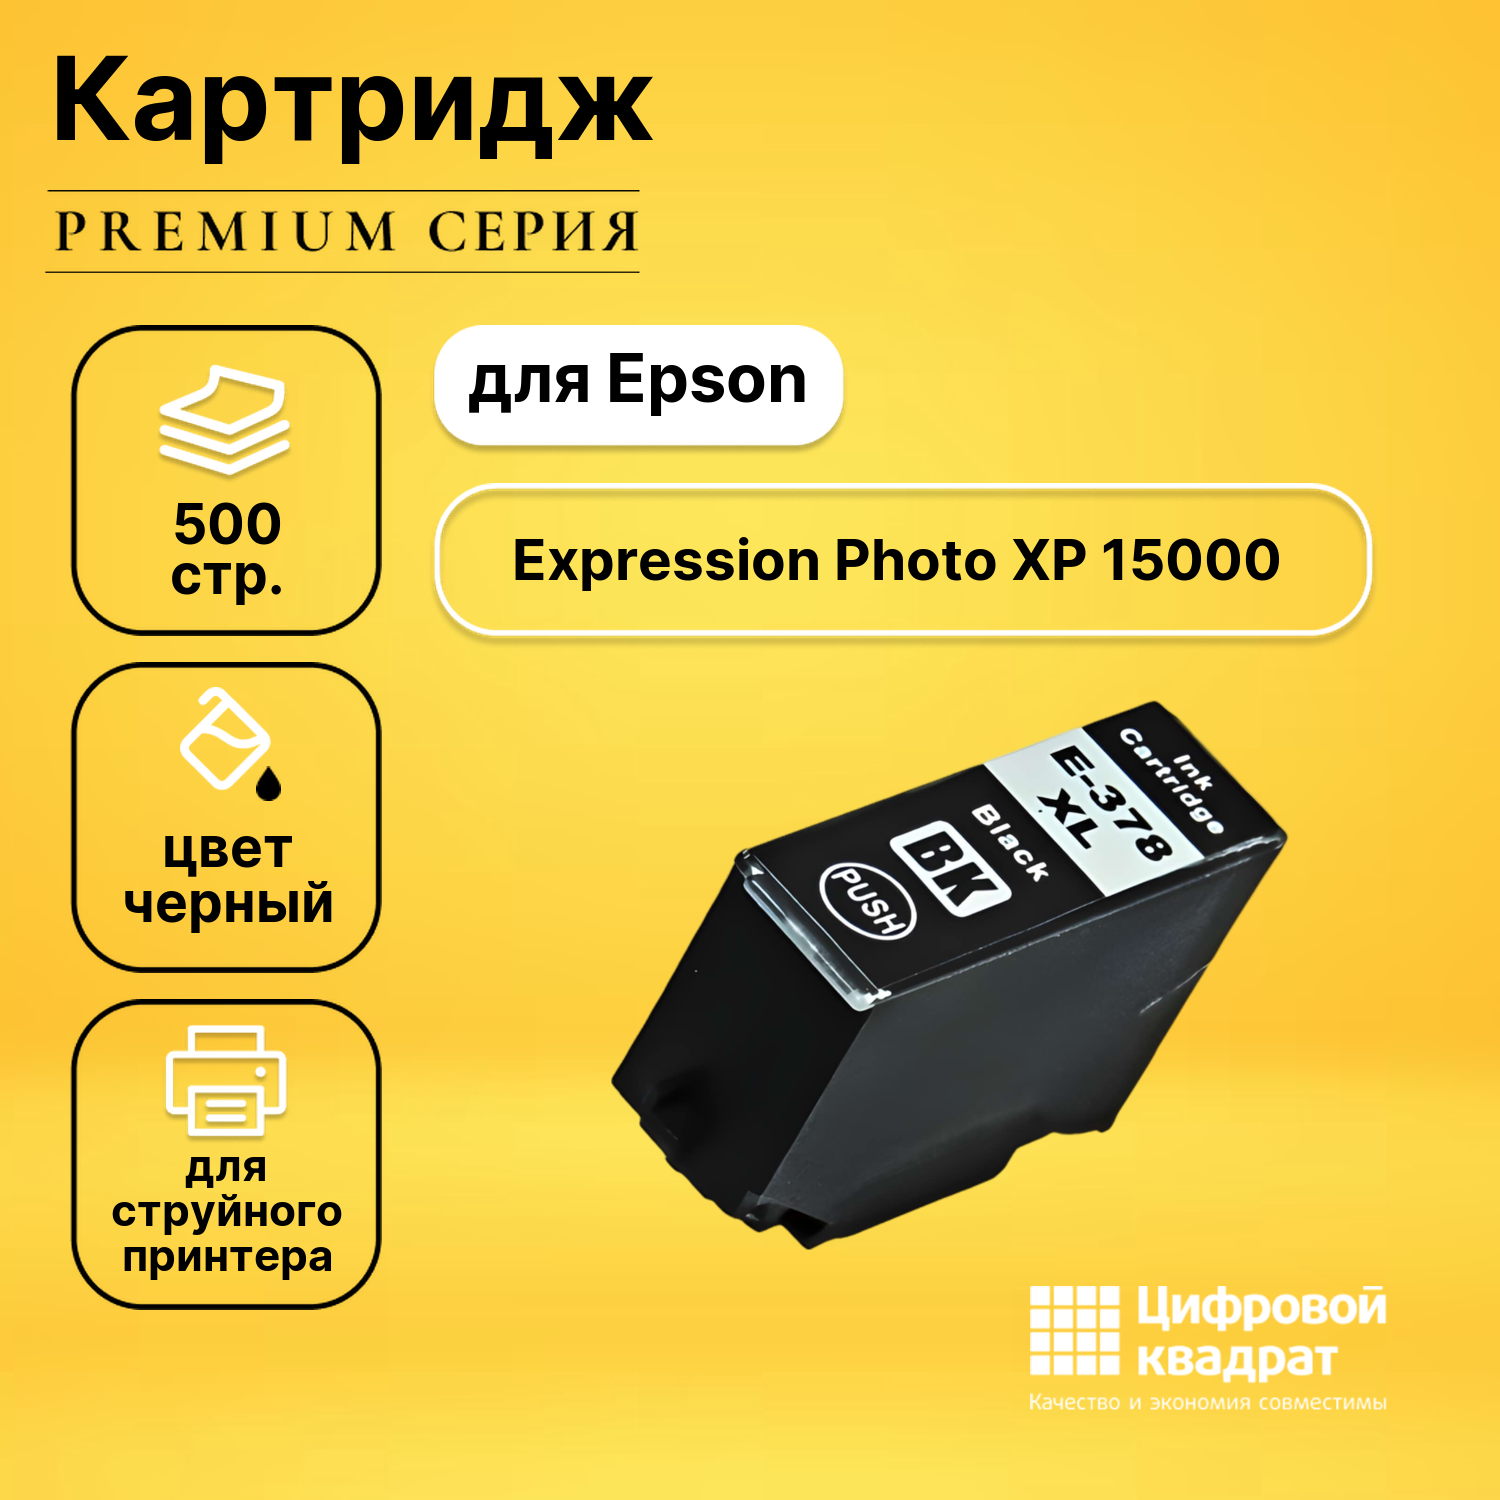 Картридж DS для Epson Expression Photo XP 15000 увеличенный ресурс совместимый